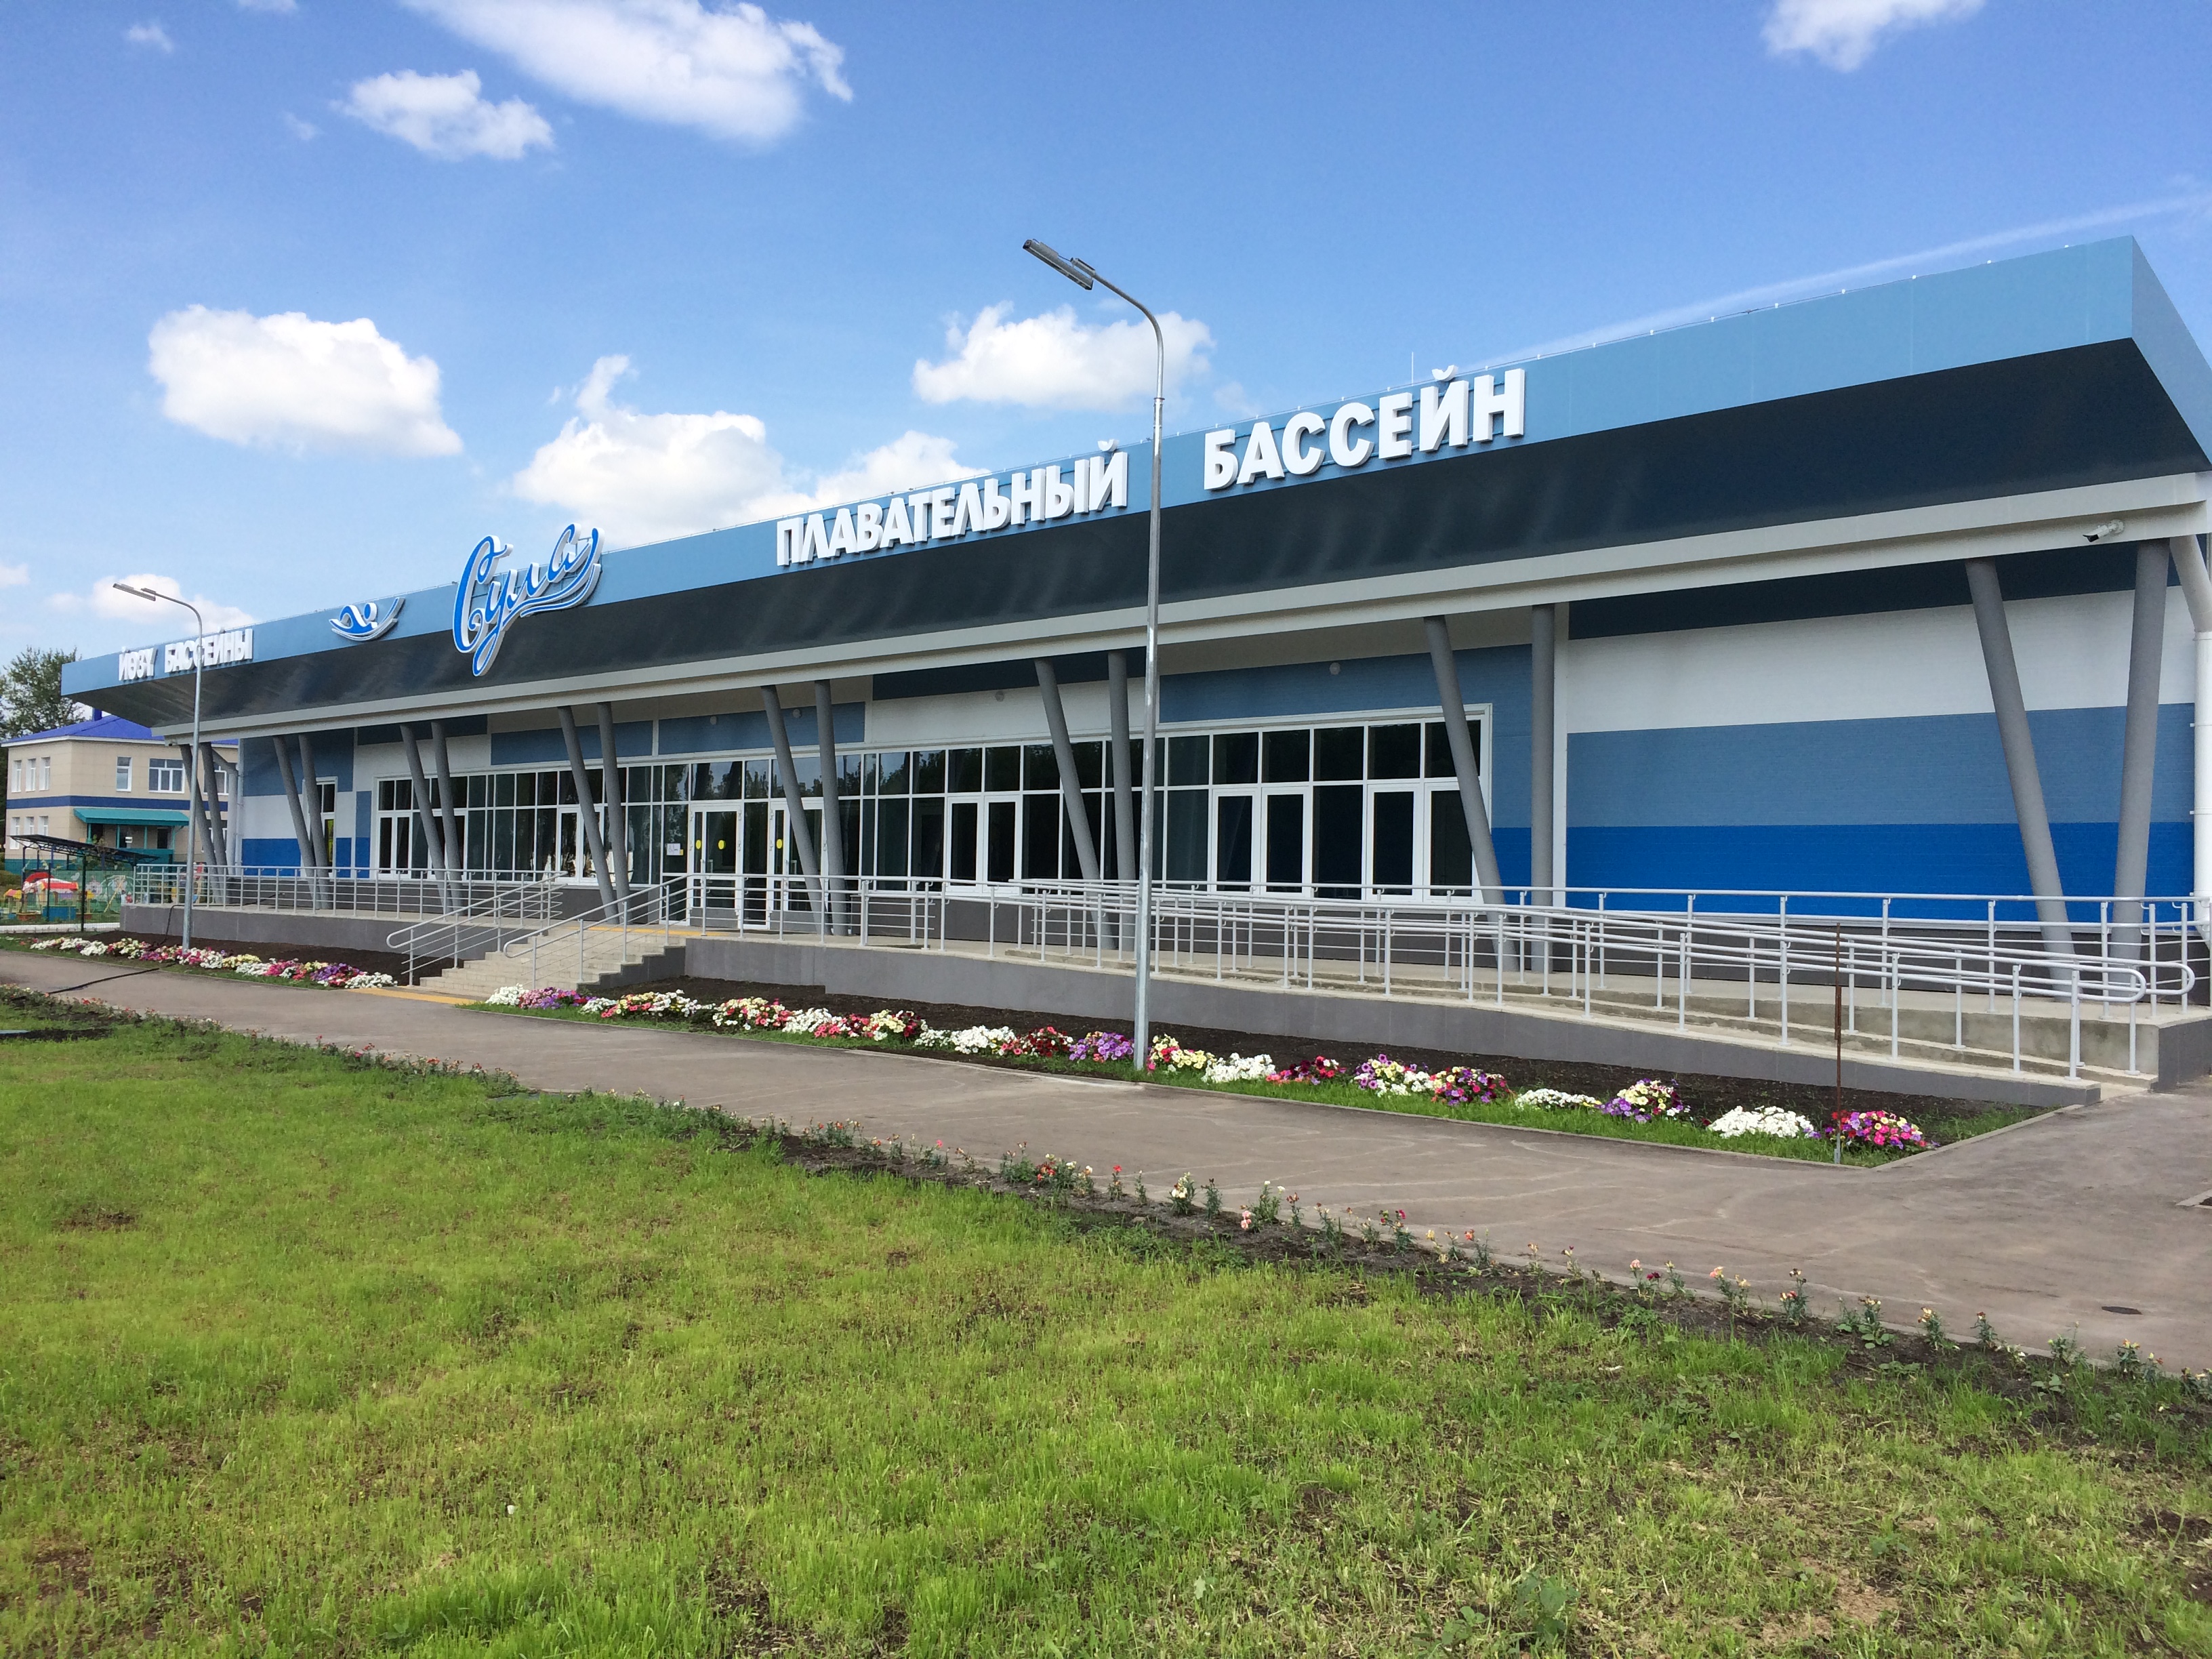 Восемь новых бассейнов построены в Татарстане по президентской программе